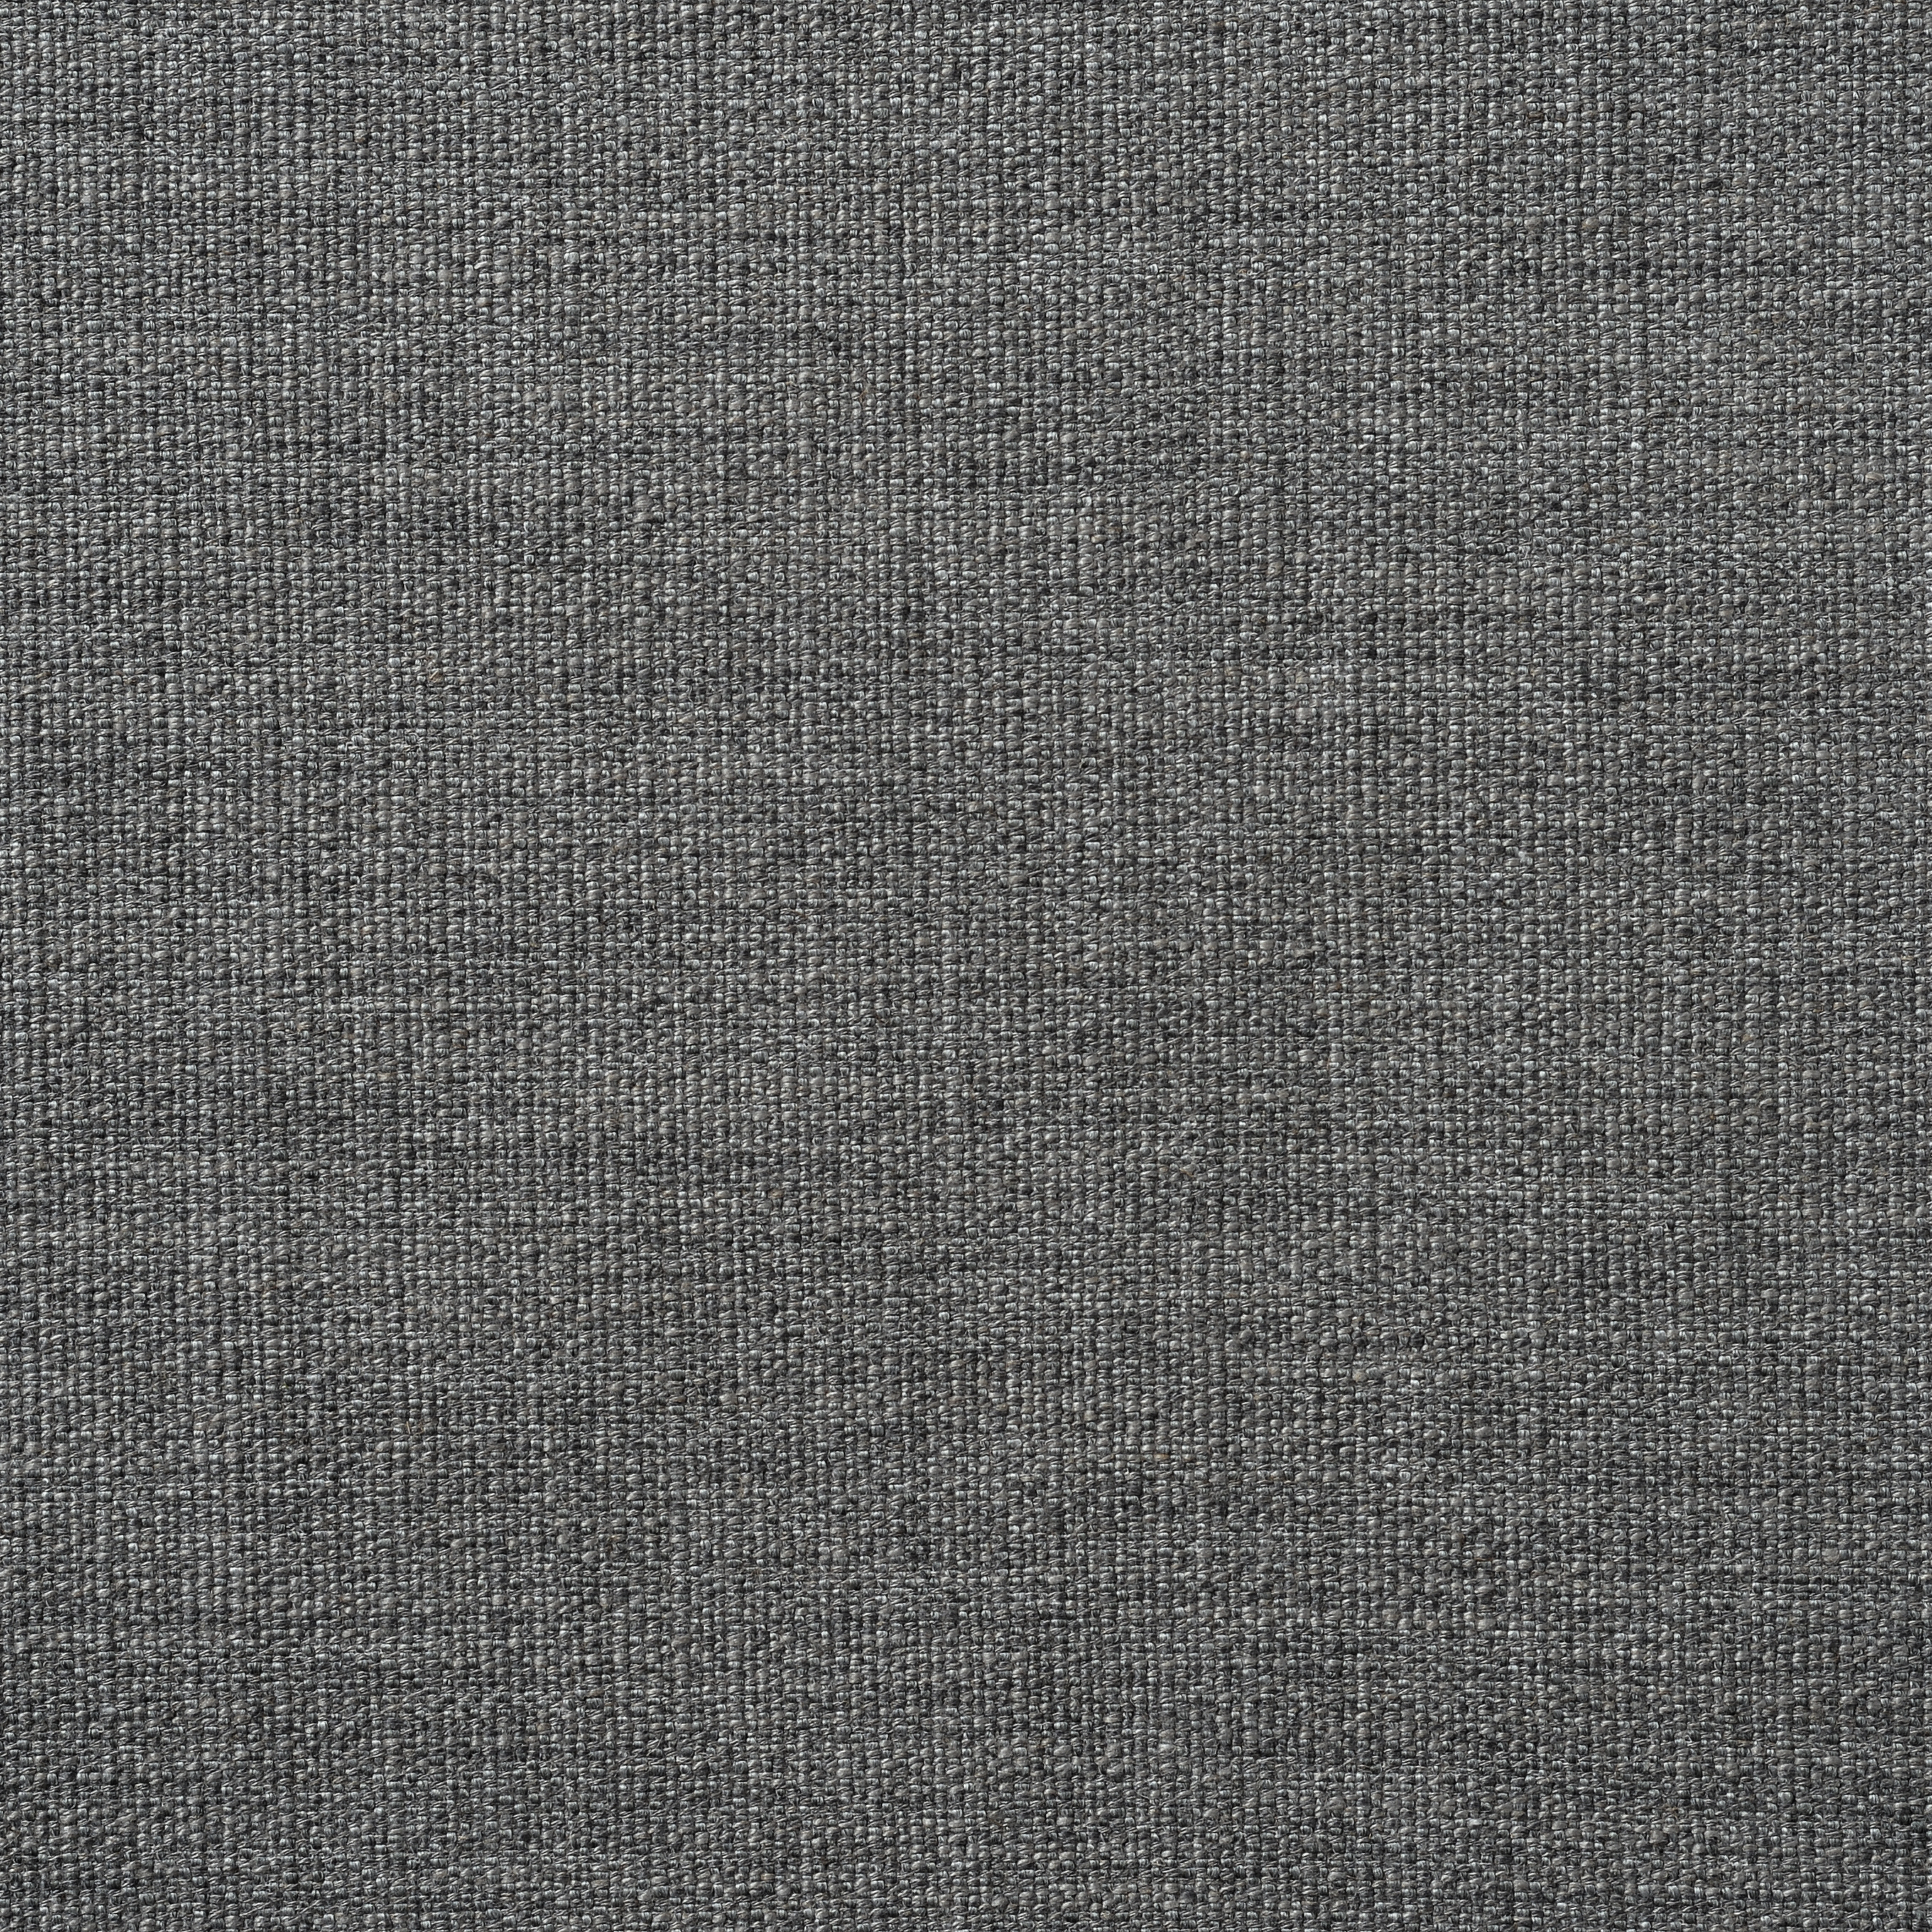 Harris Chesterfield Rustic Weave - Grey Marl